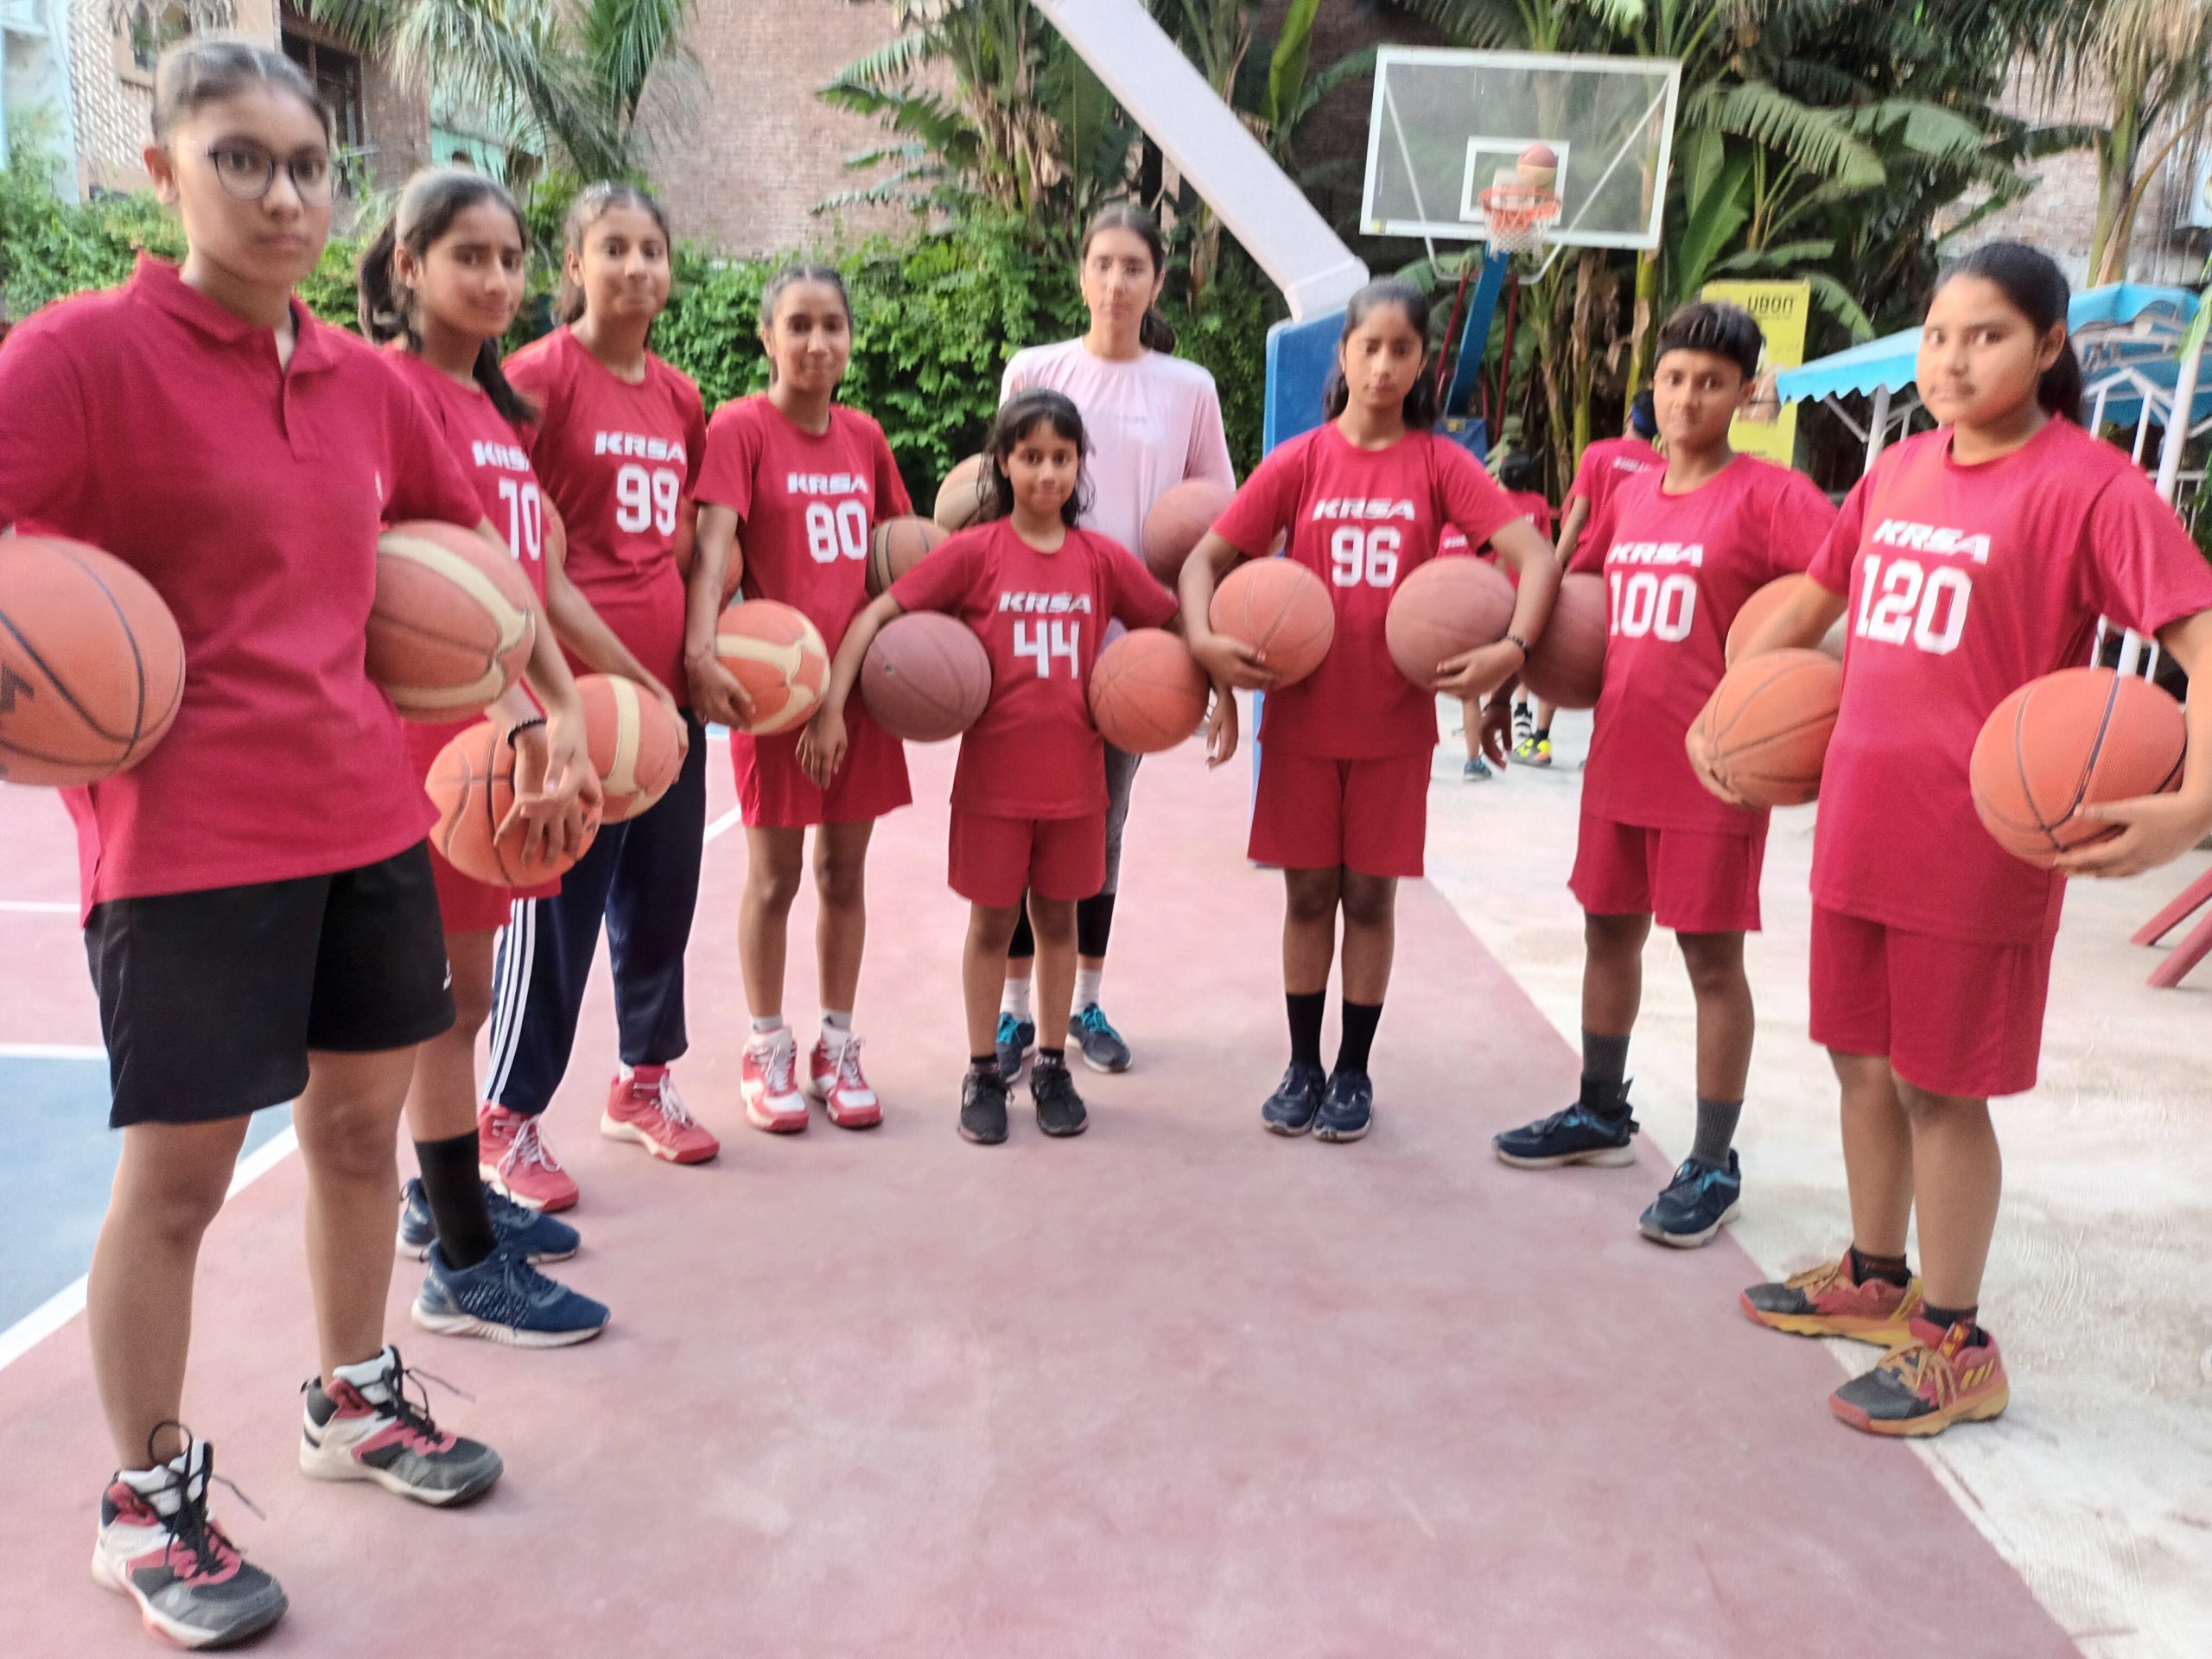 Empowering through basketball